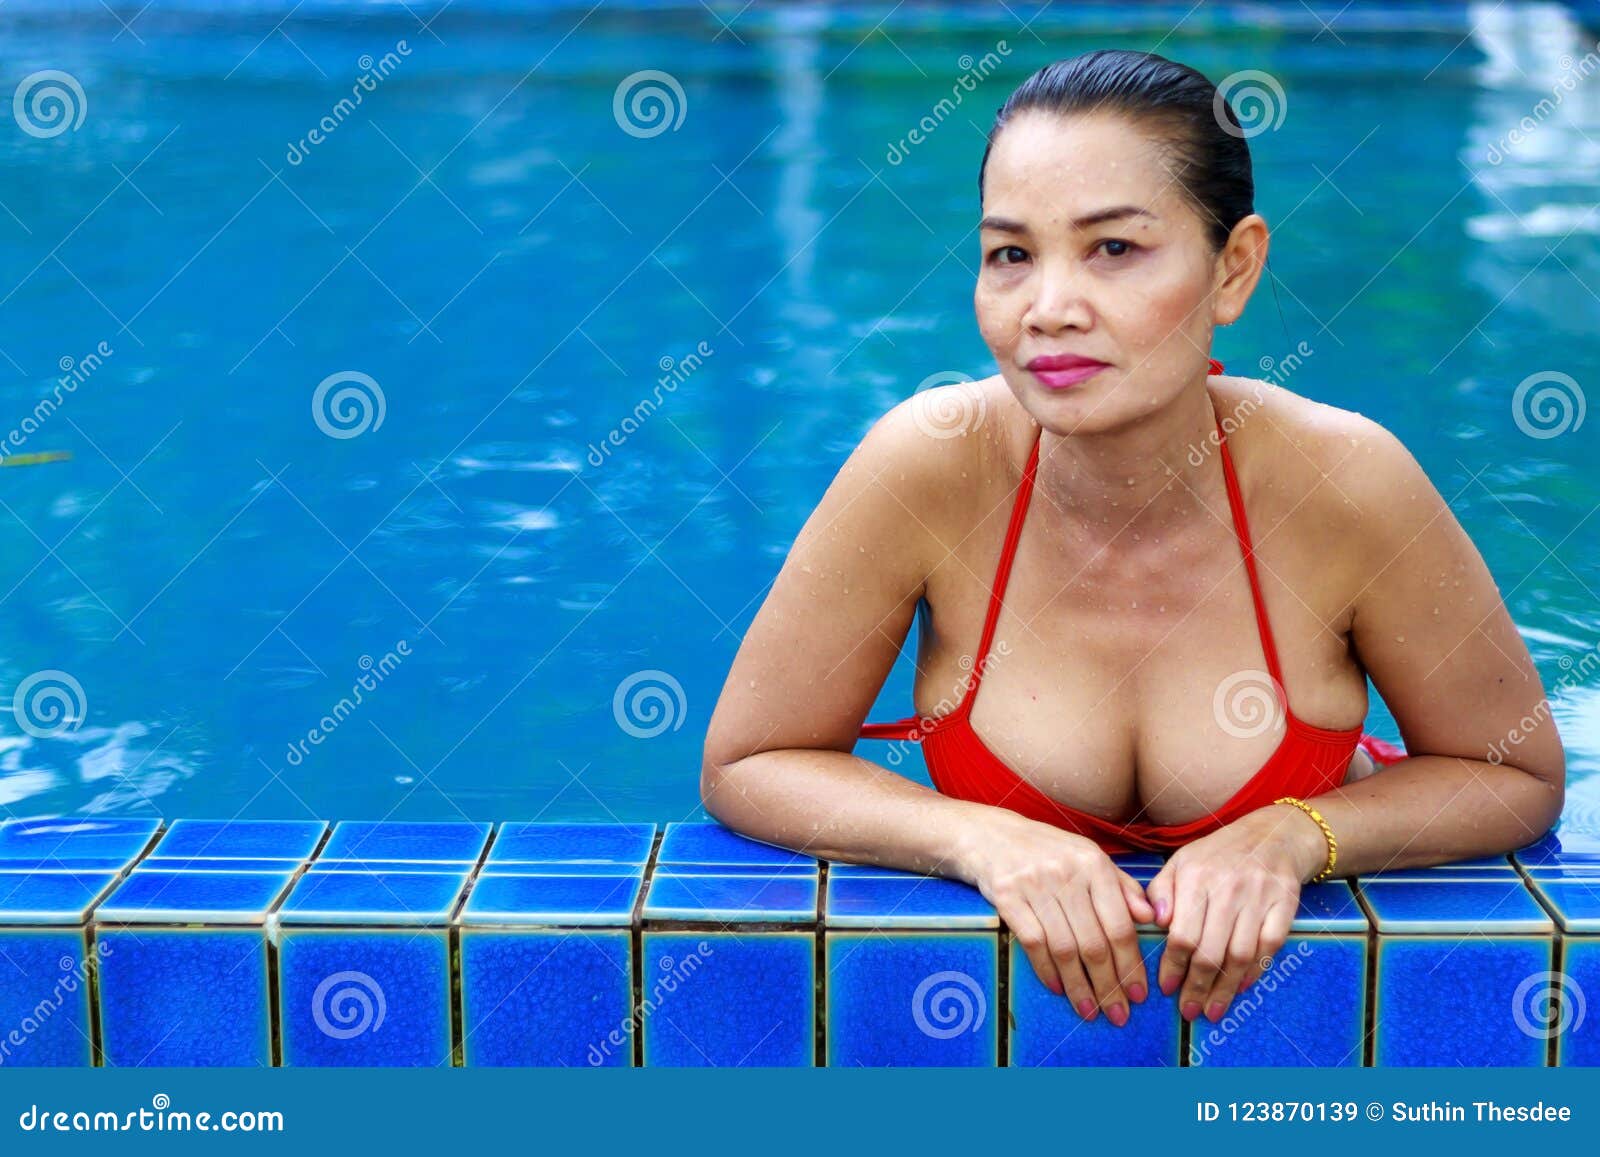 Woman Breast Beautiful with Red Bikini at Swimming Pool Stock